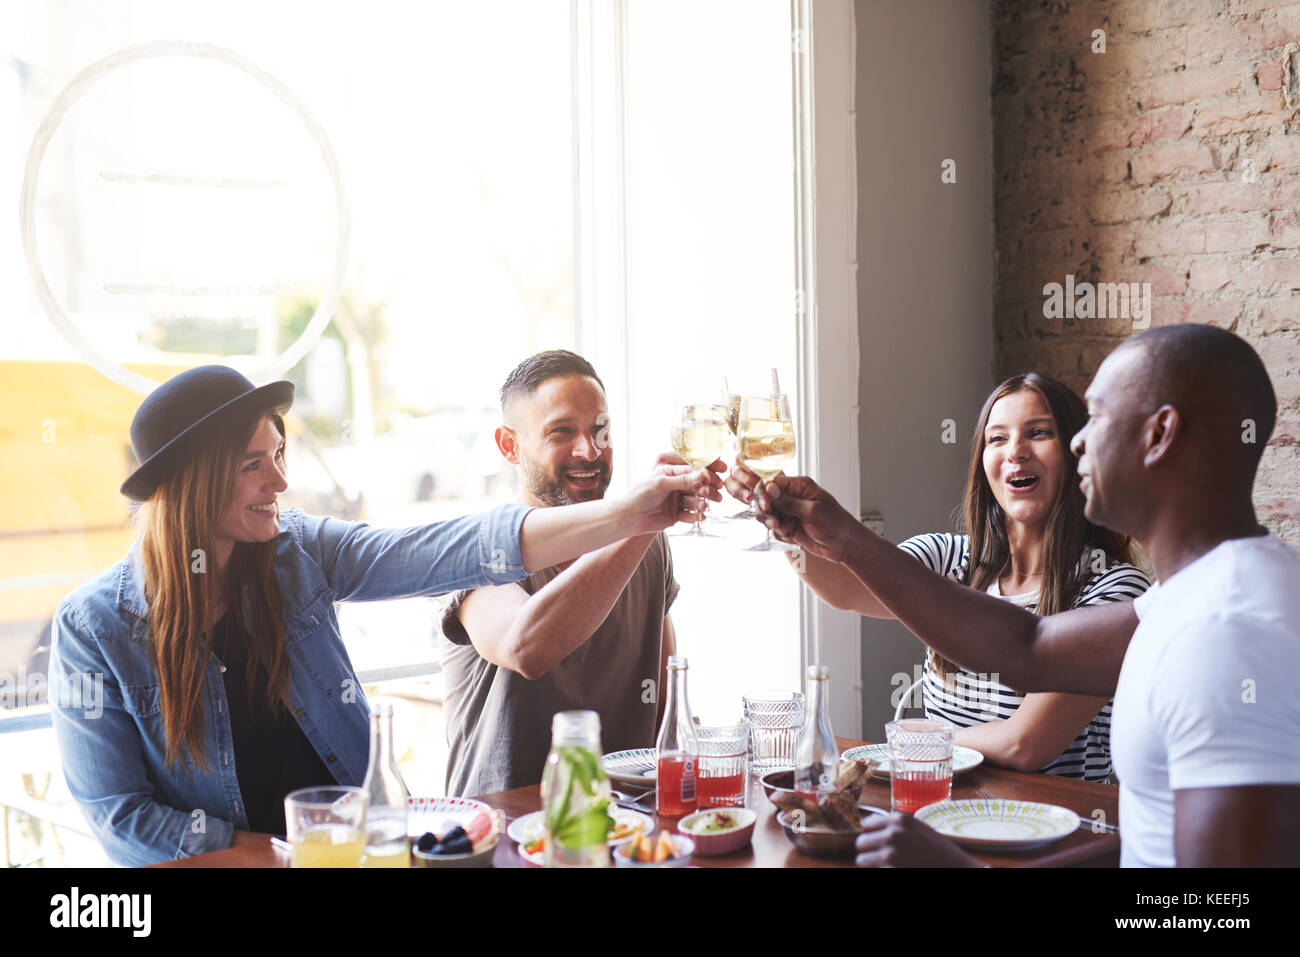 Divers Groupe de jeunes adultes mâles et femelles célébrer quelque chose ensemble avec des verres à vin à table in restaurant Banque D'Images